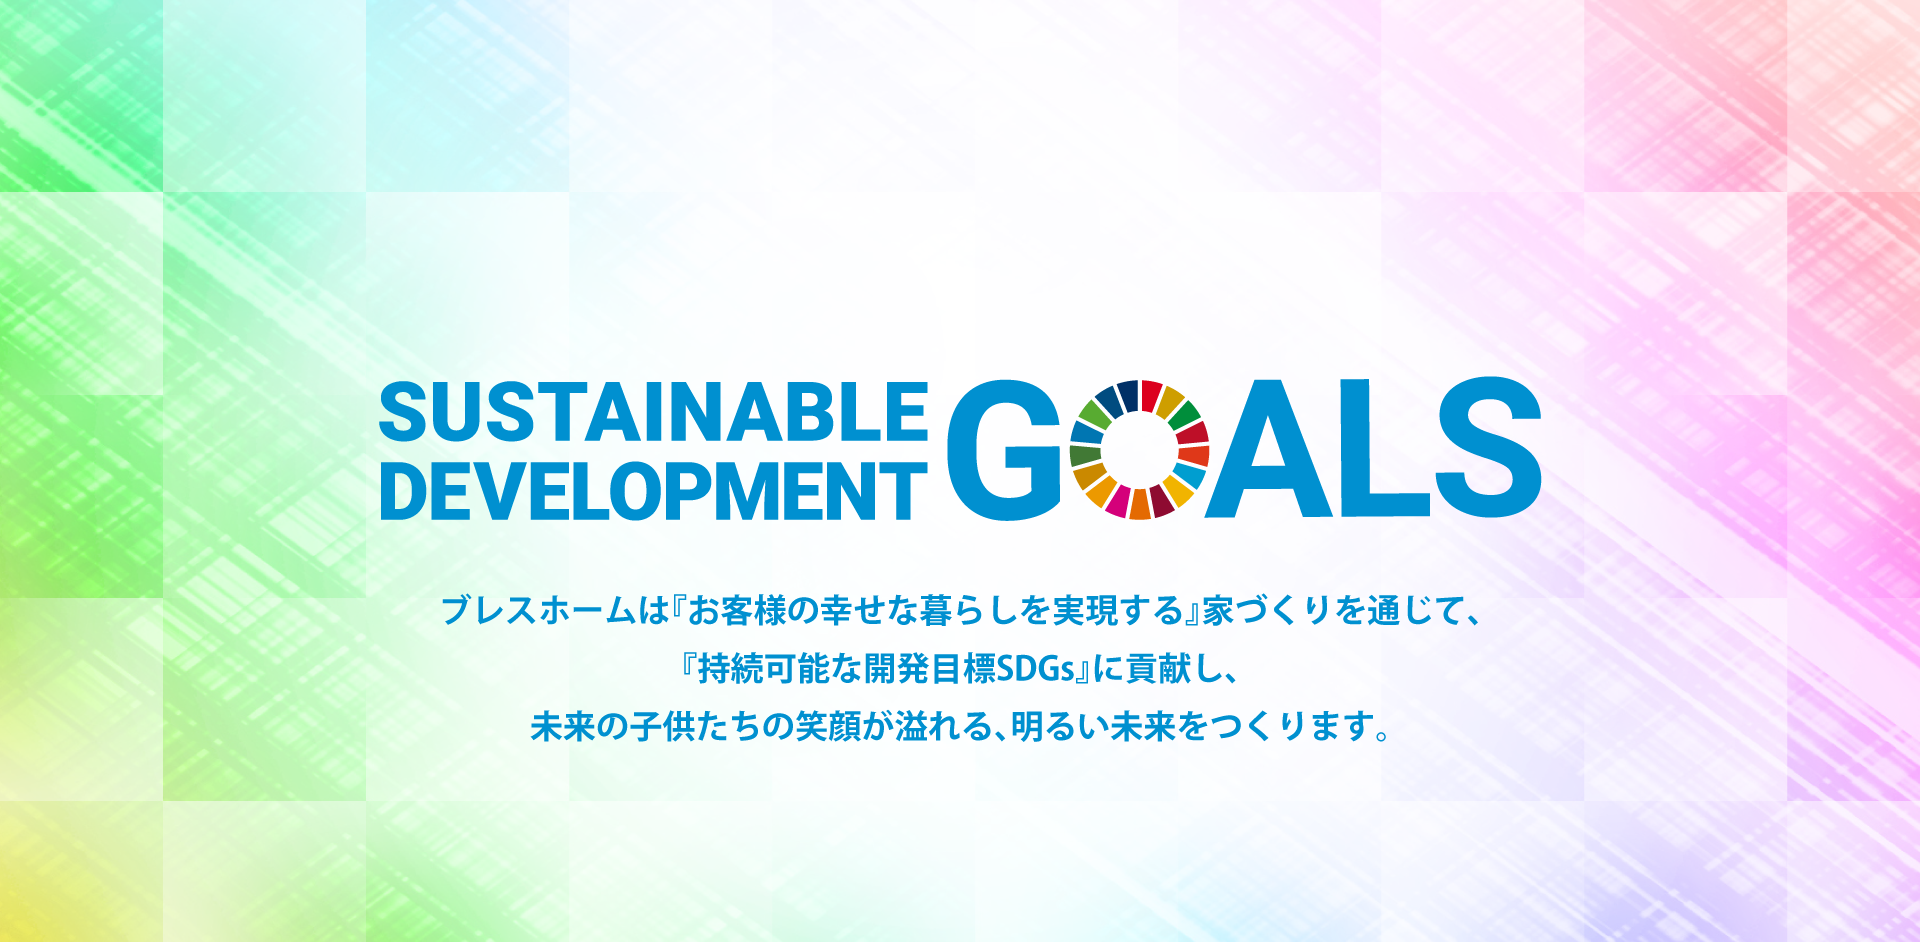 SDGs x ブレスホーム SDGsの目標に向けた取り組み